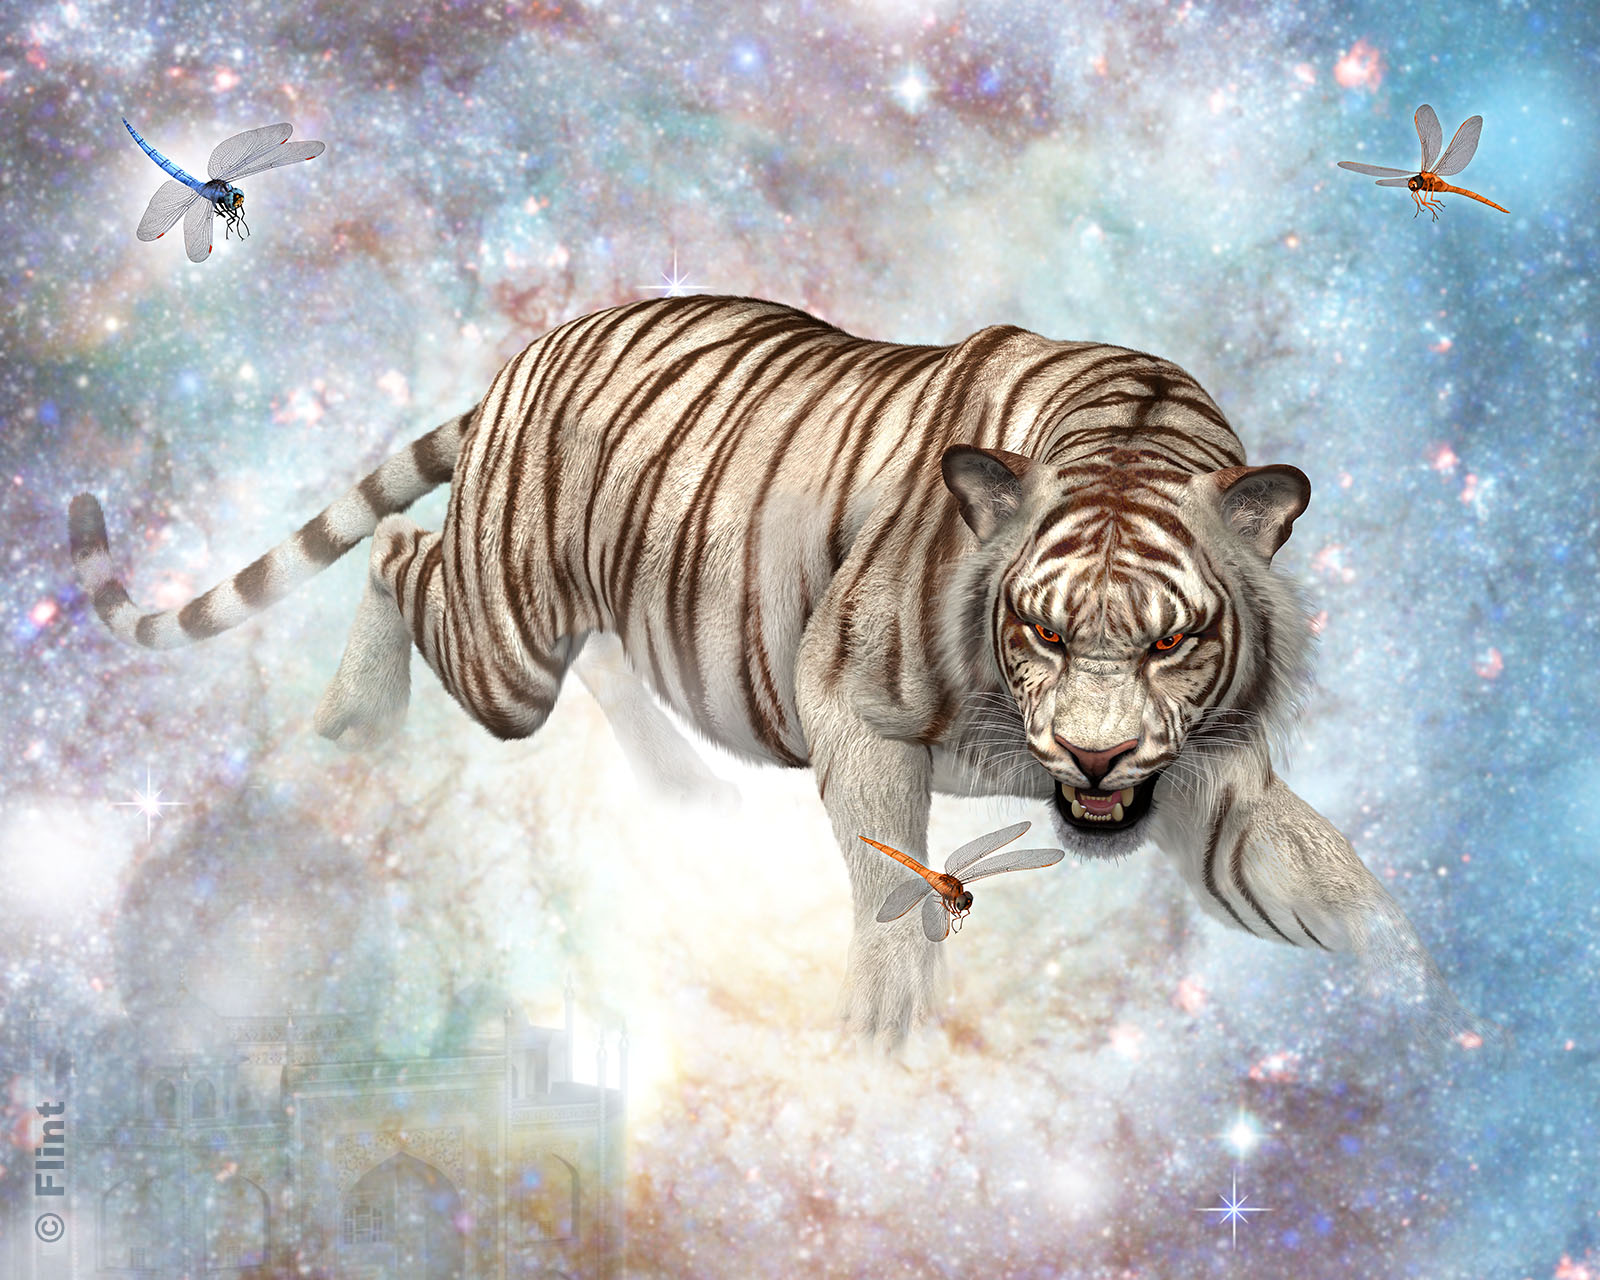 Tiger Nebula.jpg